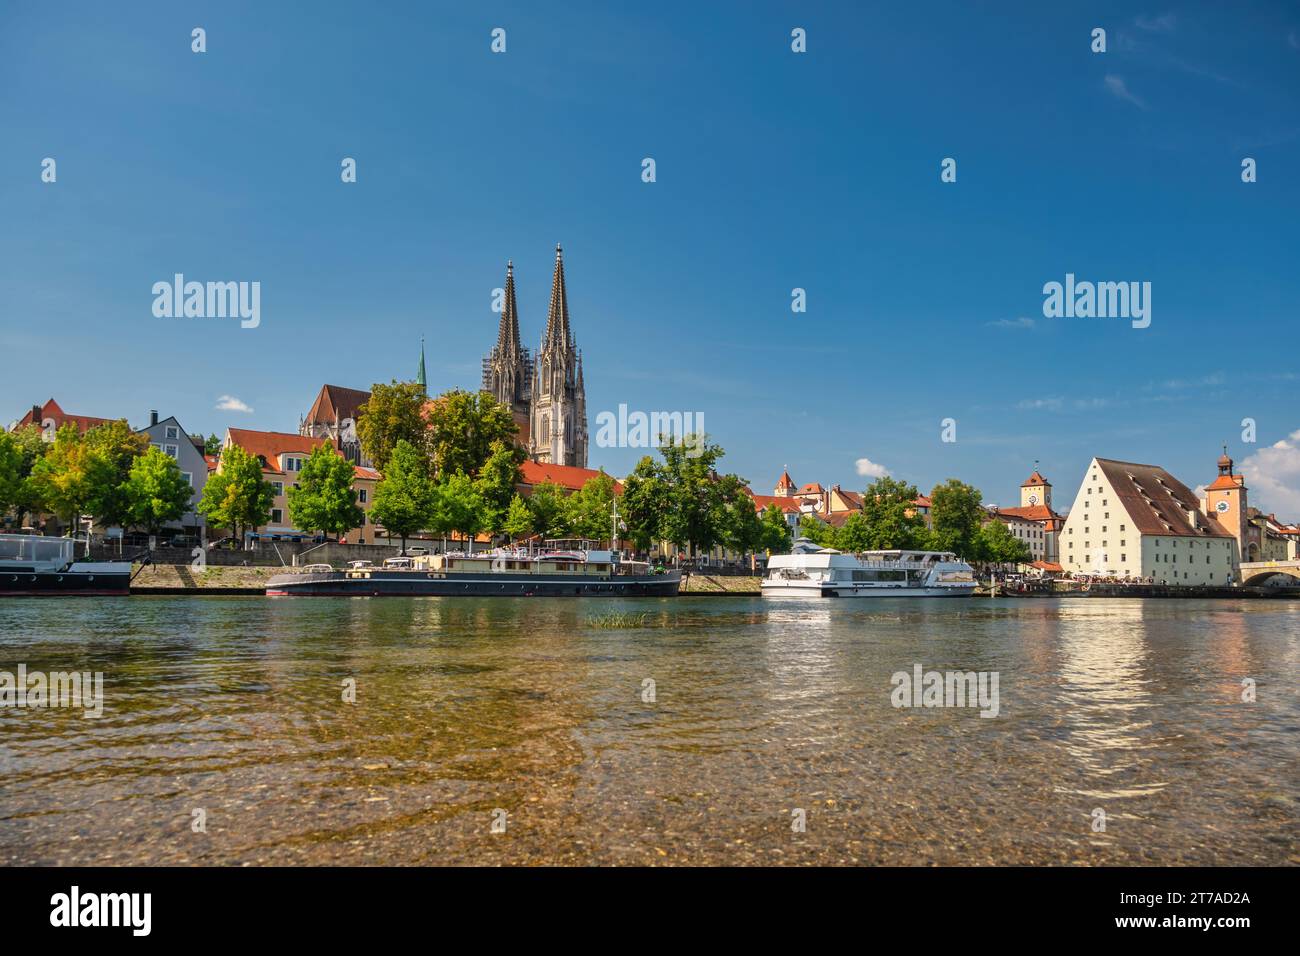 Ratisbona Alemania, horizonte de la ciudad en el casco antiguo de Altstadt y el río Danubio Foto de stock